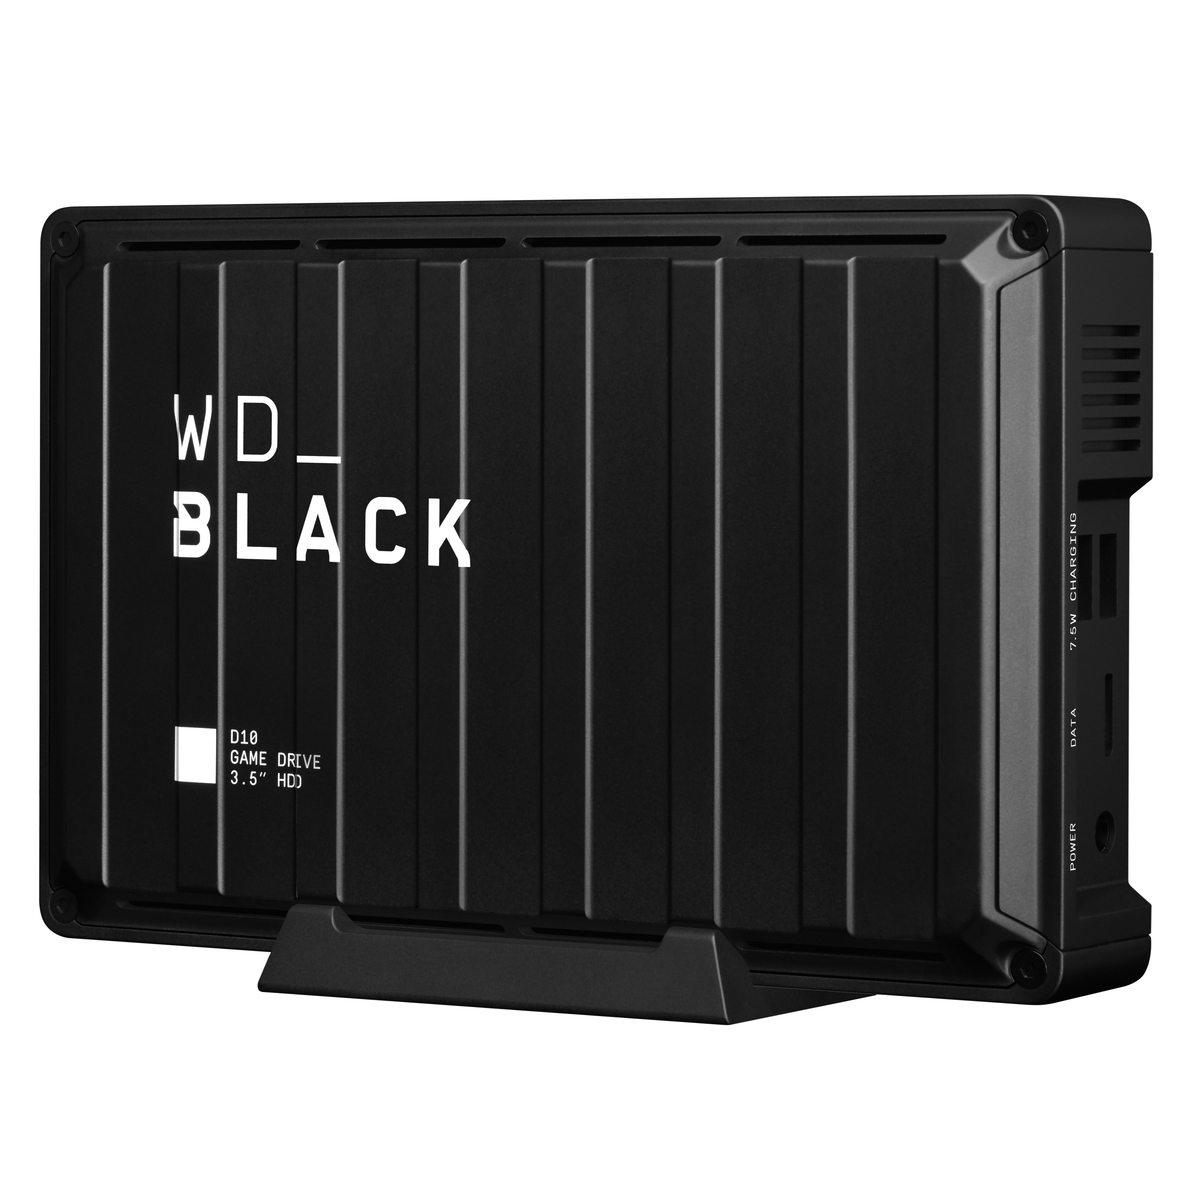 Externe Festplatte 8 TB WD BLACK D10 GAME DRIVE